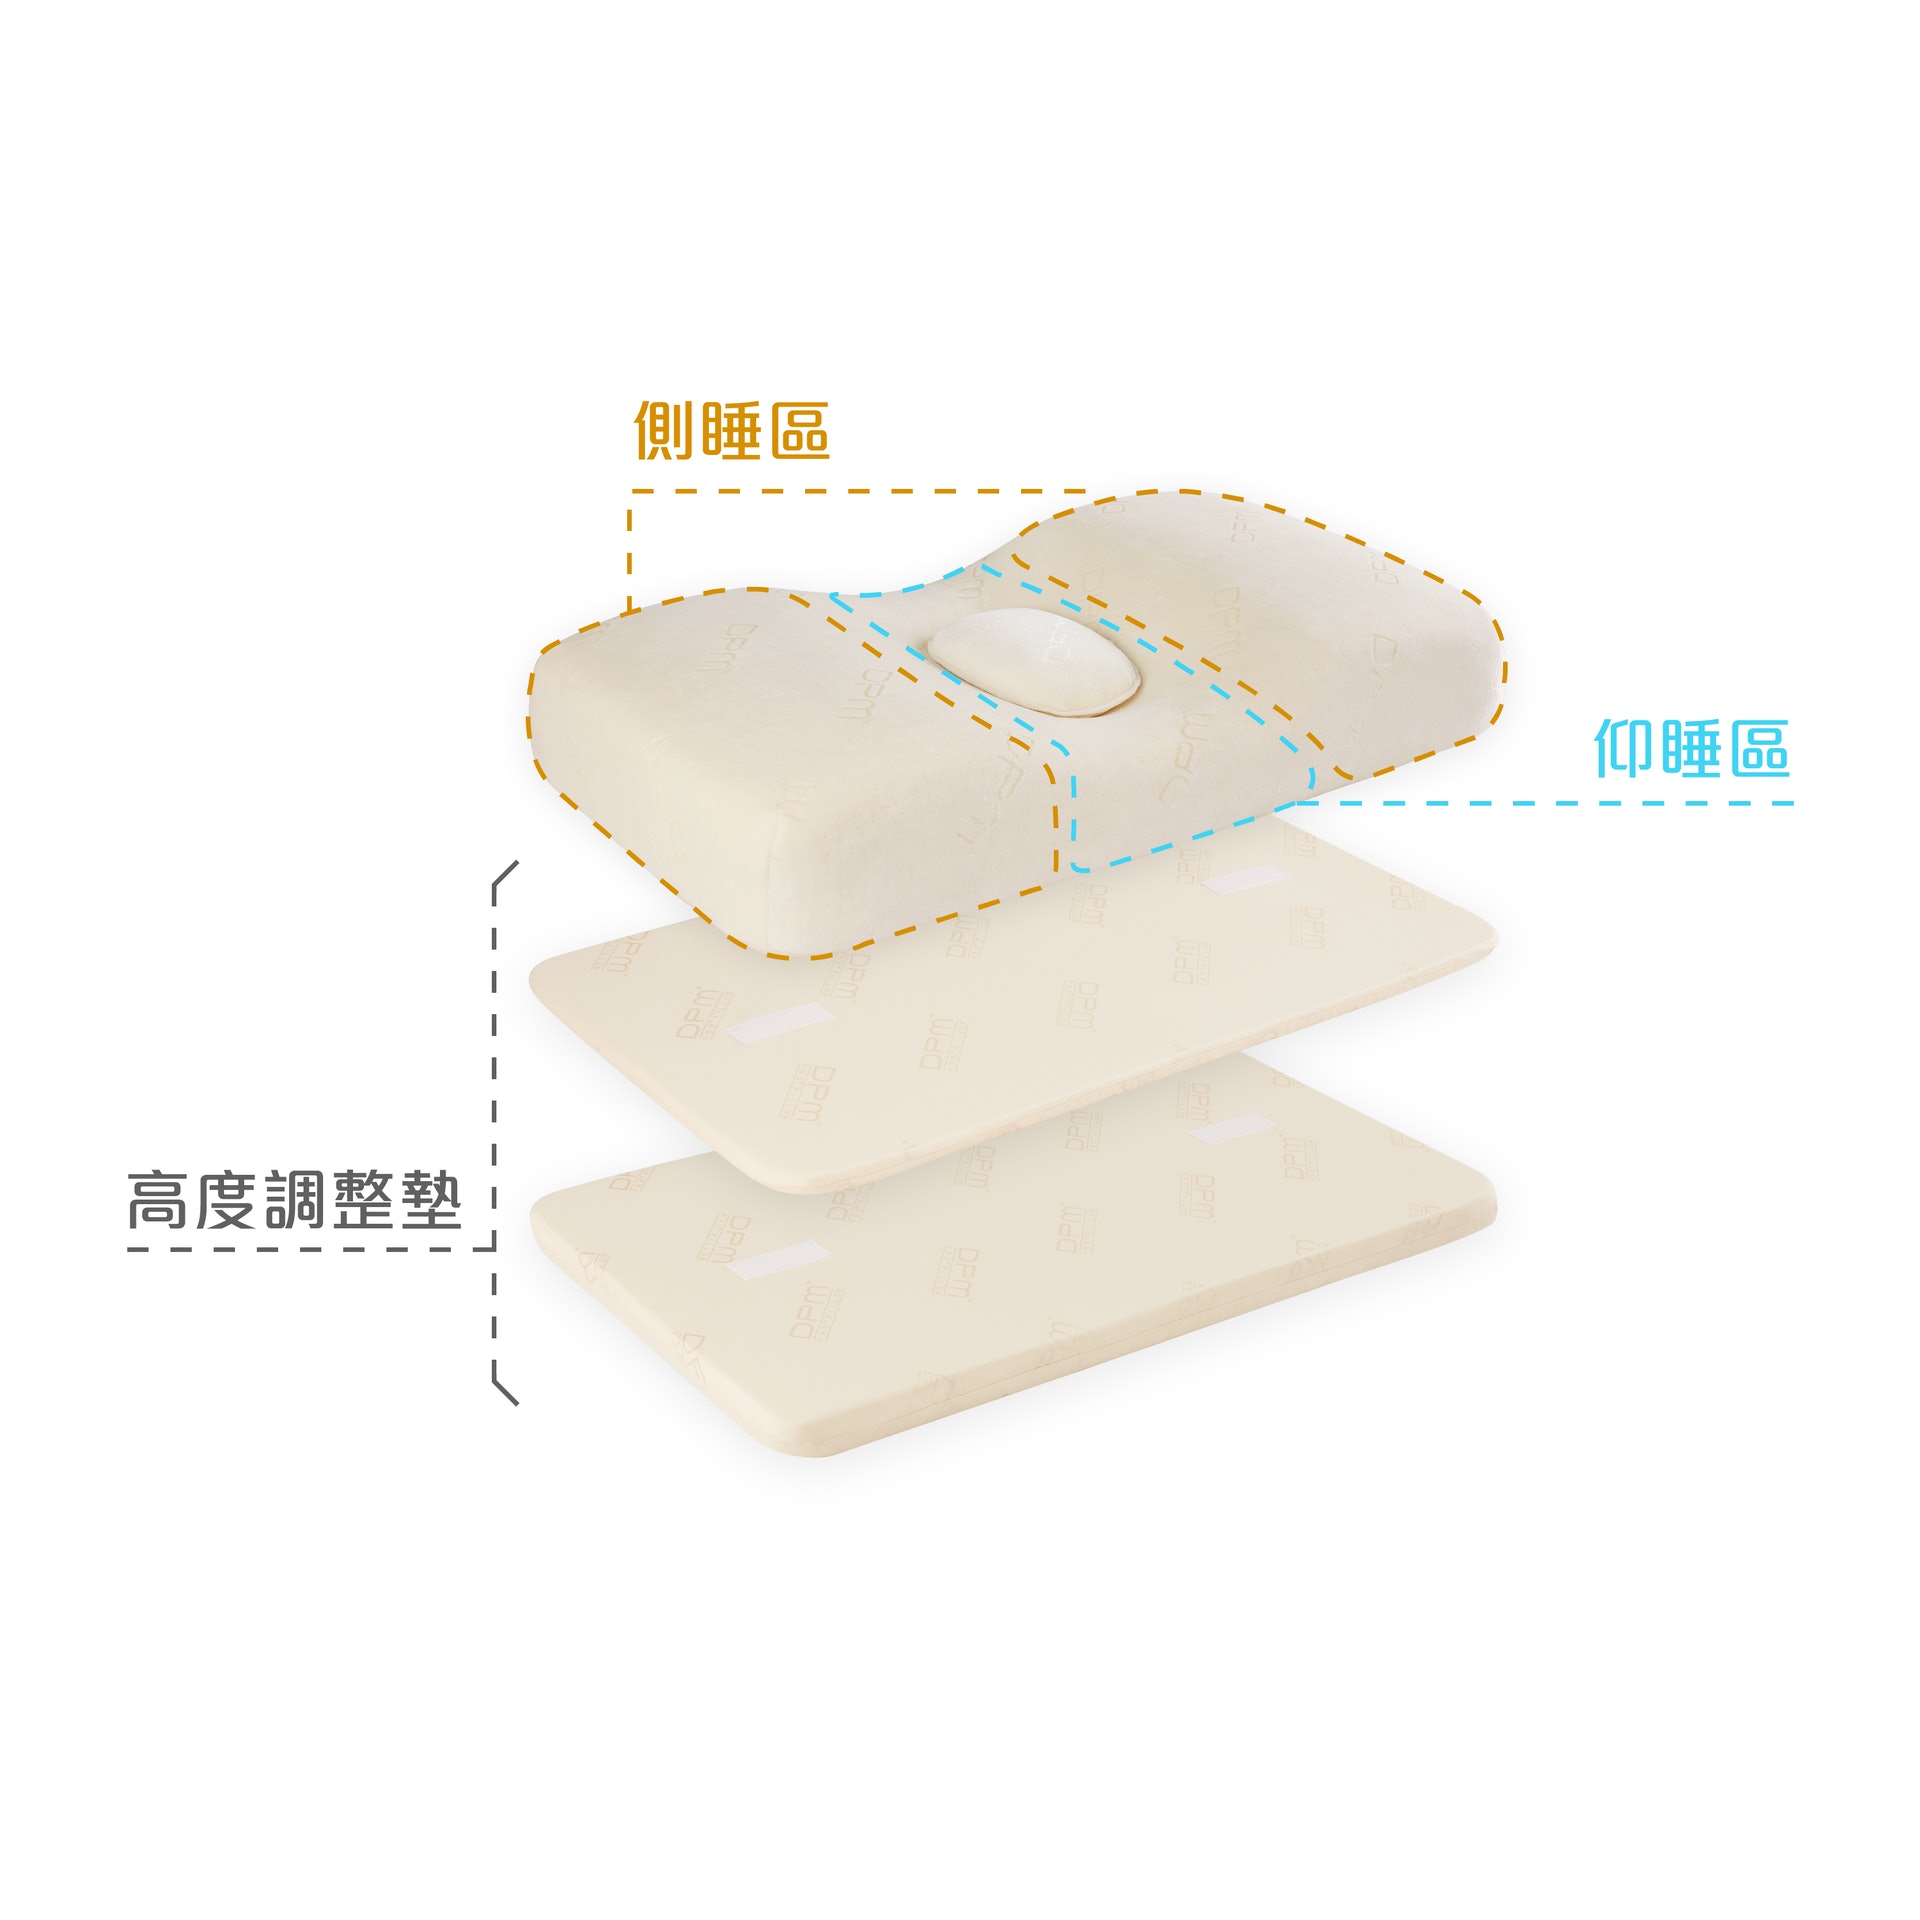 枕頭和床褥的互相配合十分重要，而 DPM 枕頭的調整墊便提供了靈活的調整空間，讓新購置的枕頭能夠完美地配合現有的床褥。（圖片：DPM）